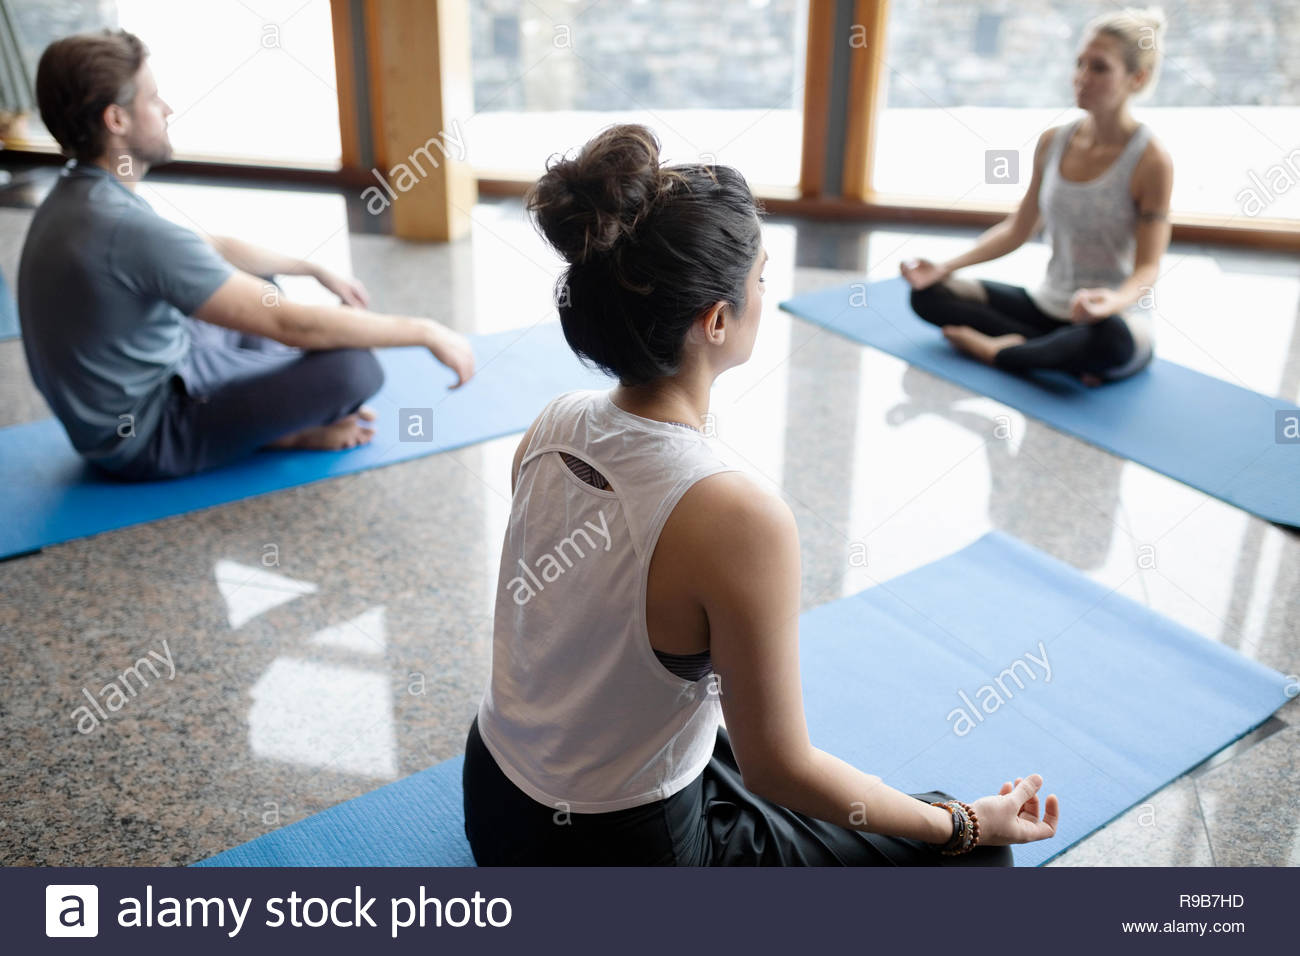 Heitere Menschen üben Yoga, sitzen in Lotus Position im Studio Stockfoto